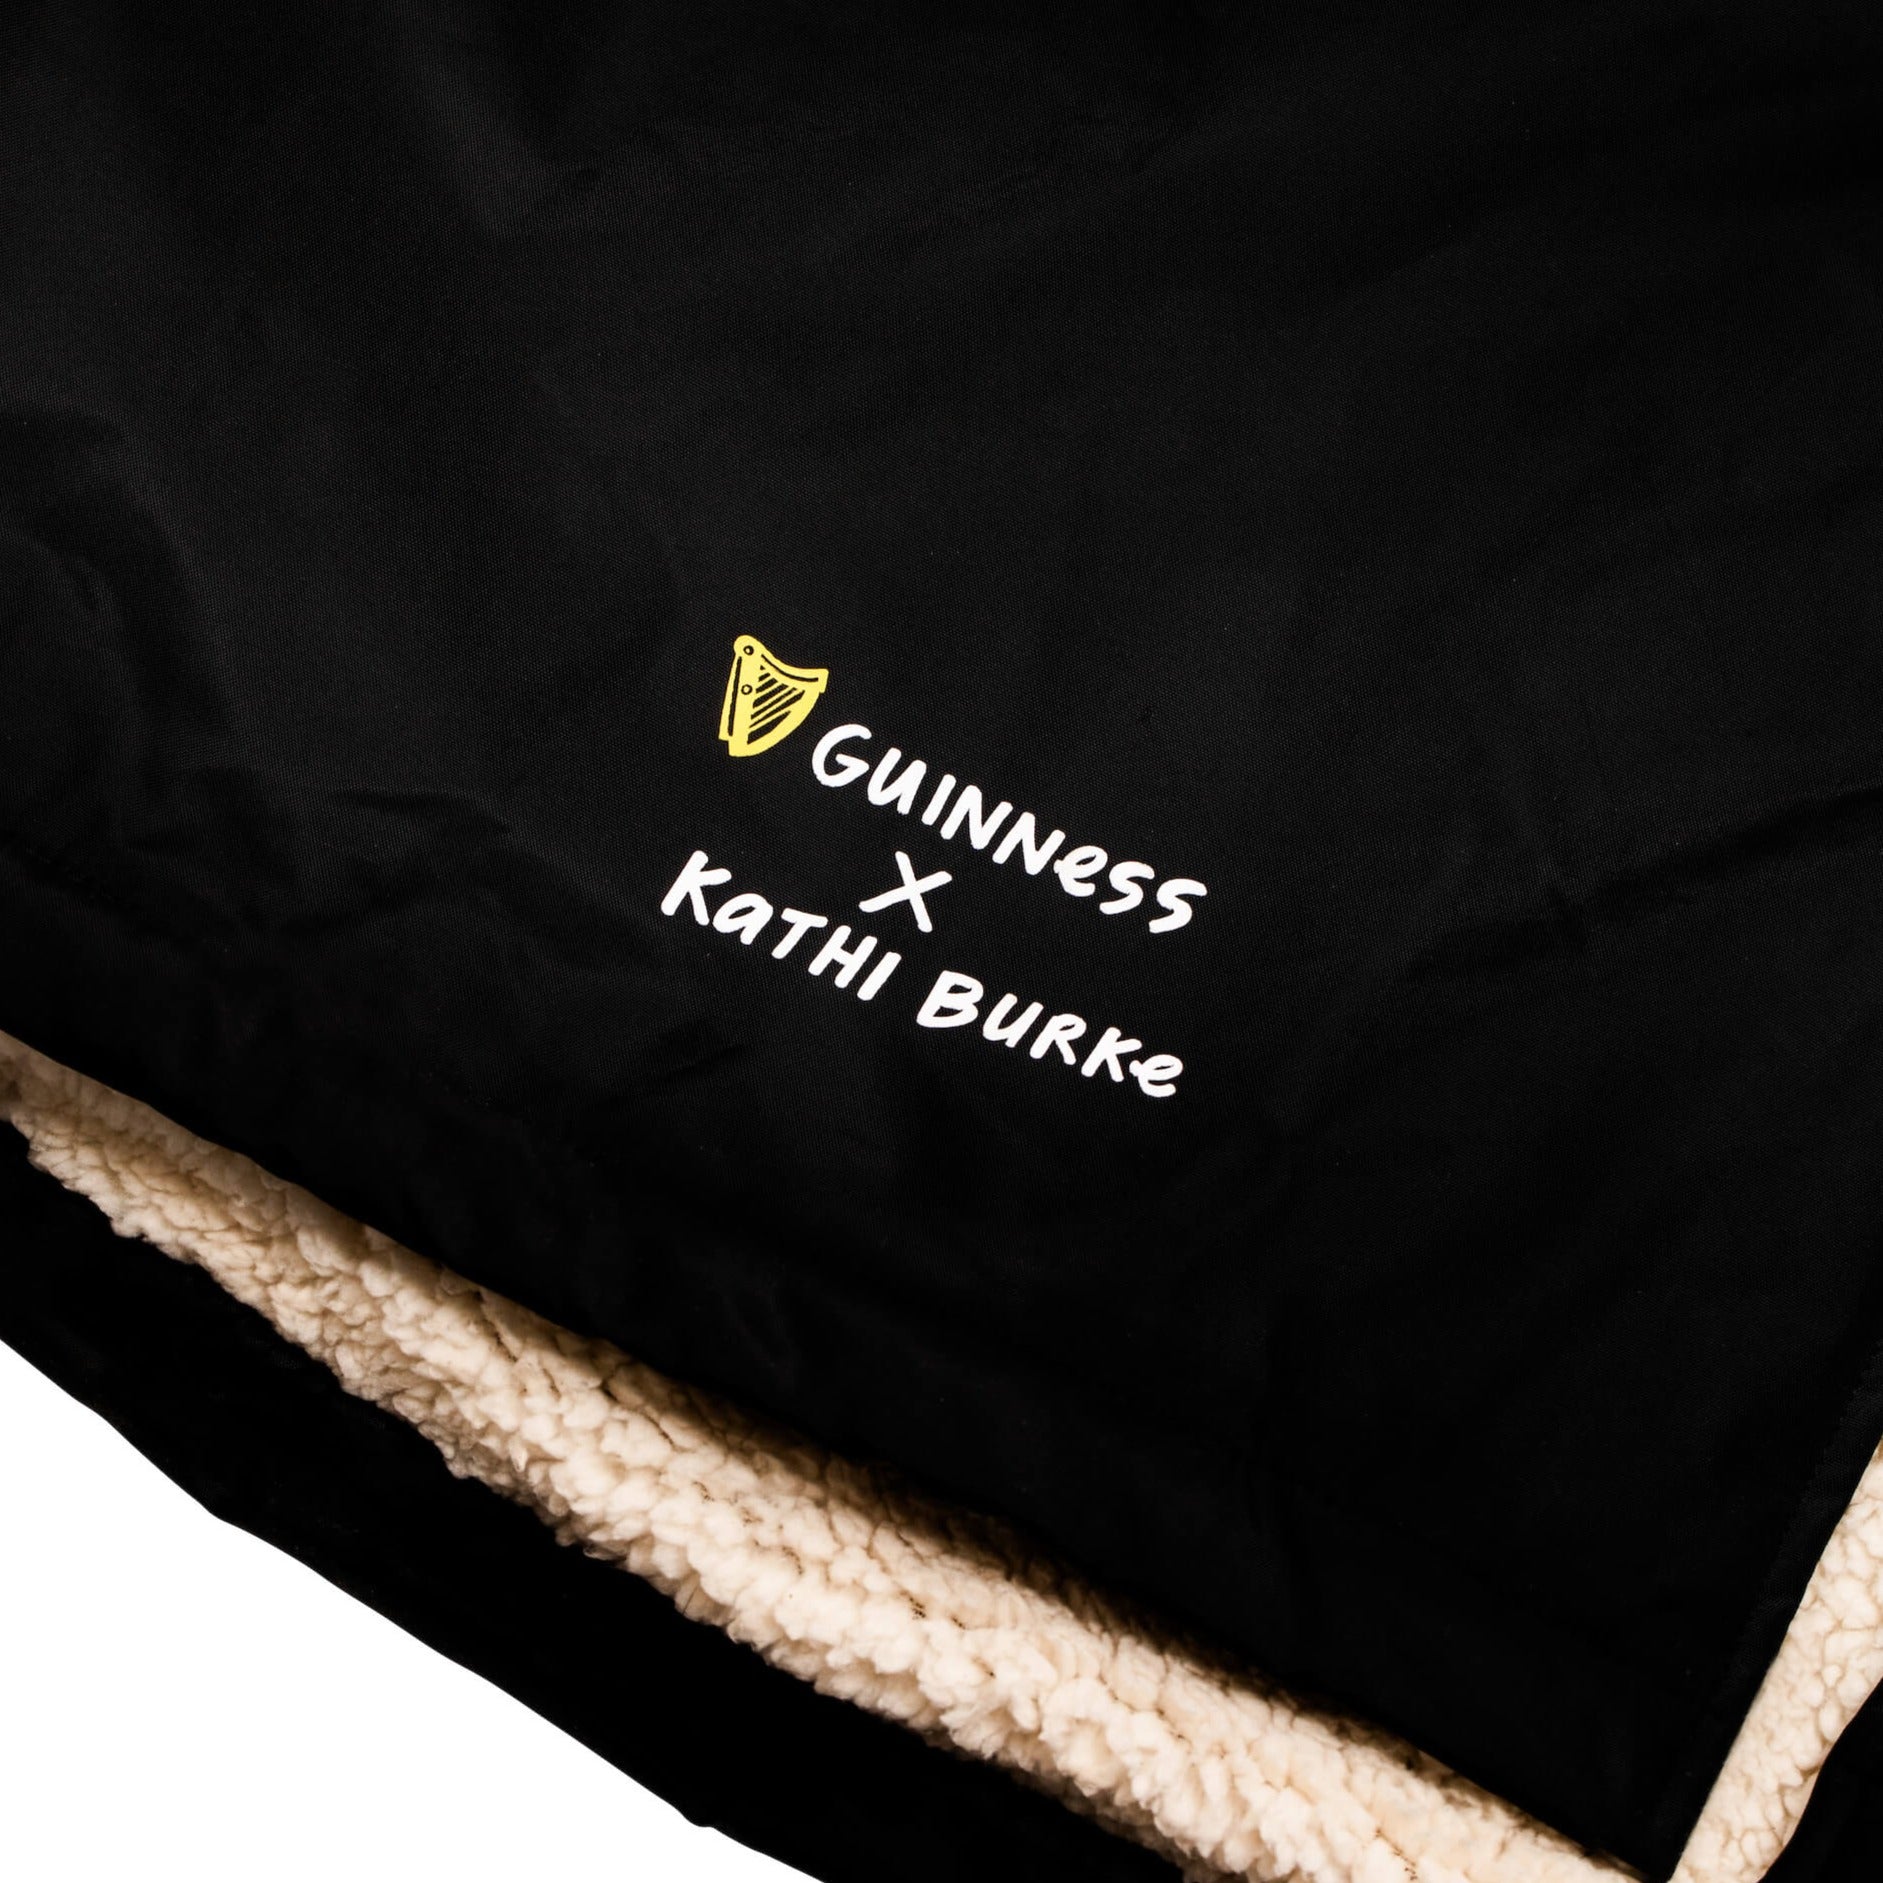 Guinness Storehouse and Kathi Burke Lovely Day logo on the Dry Robe.